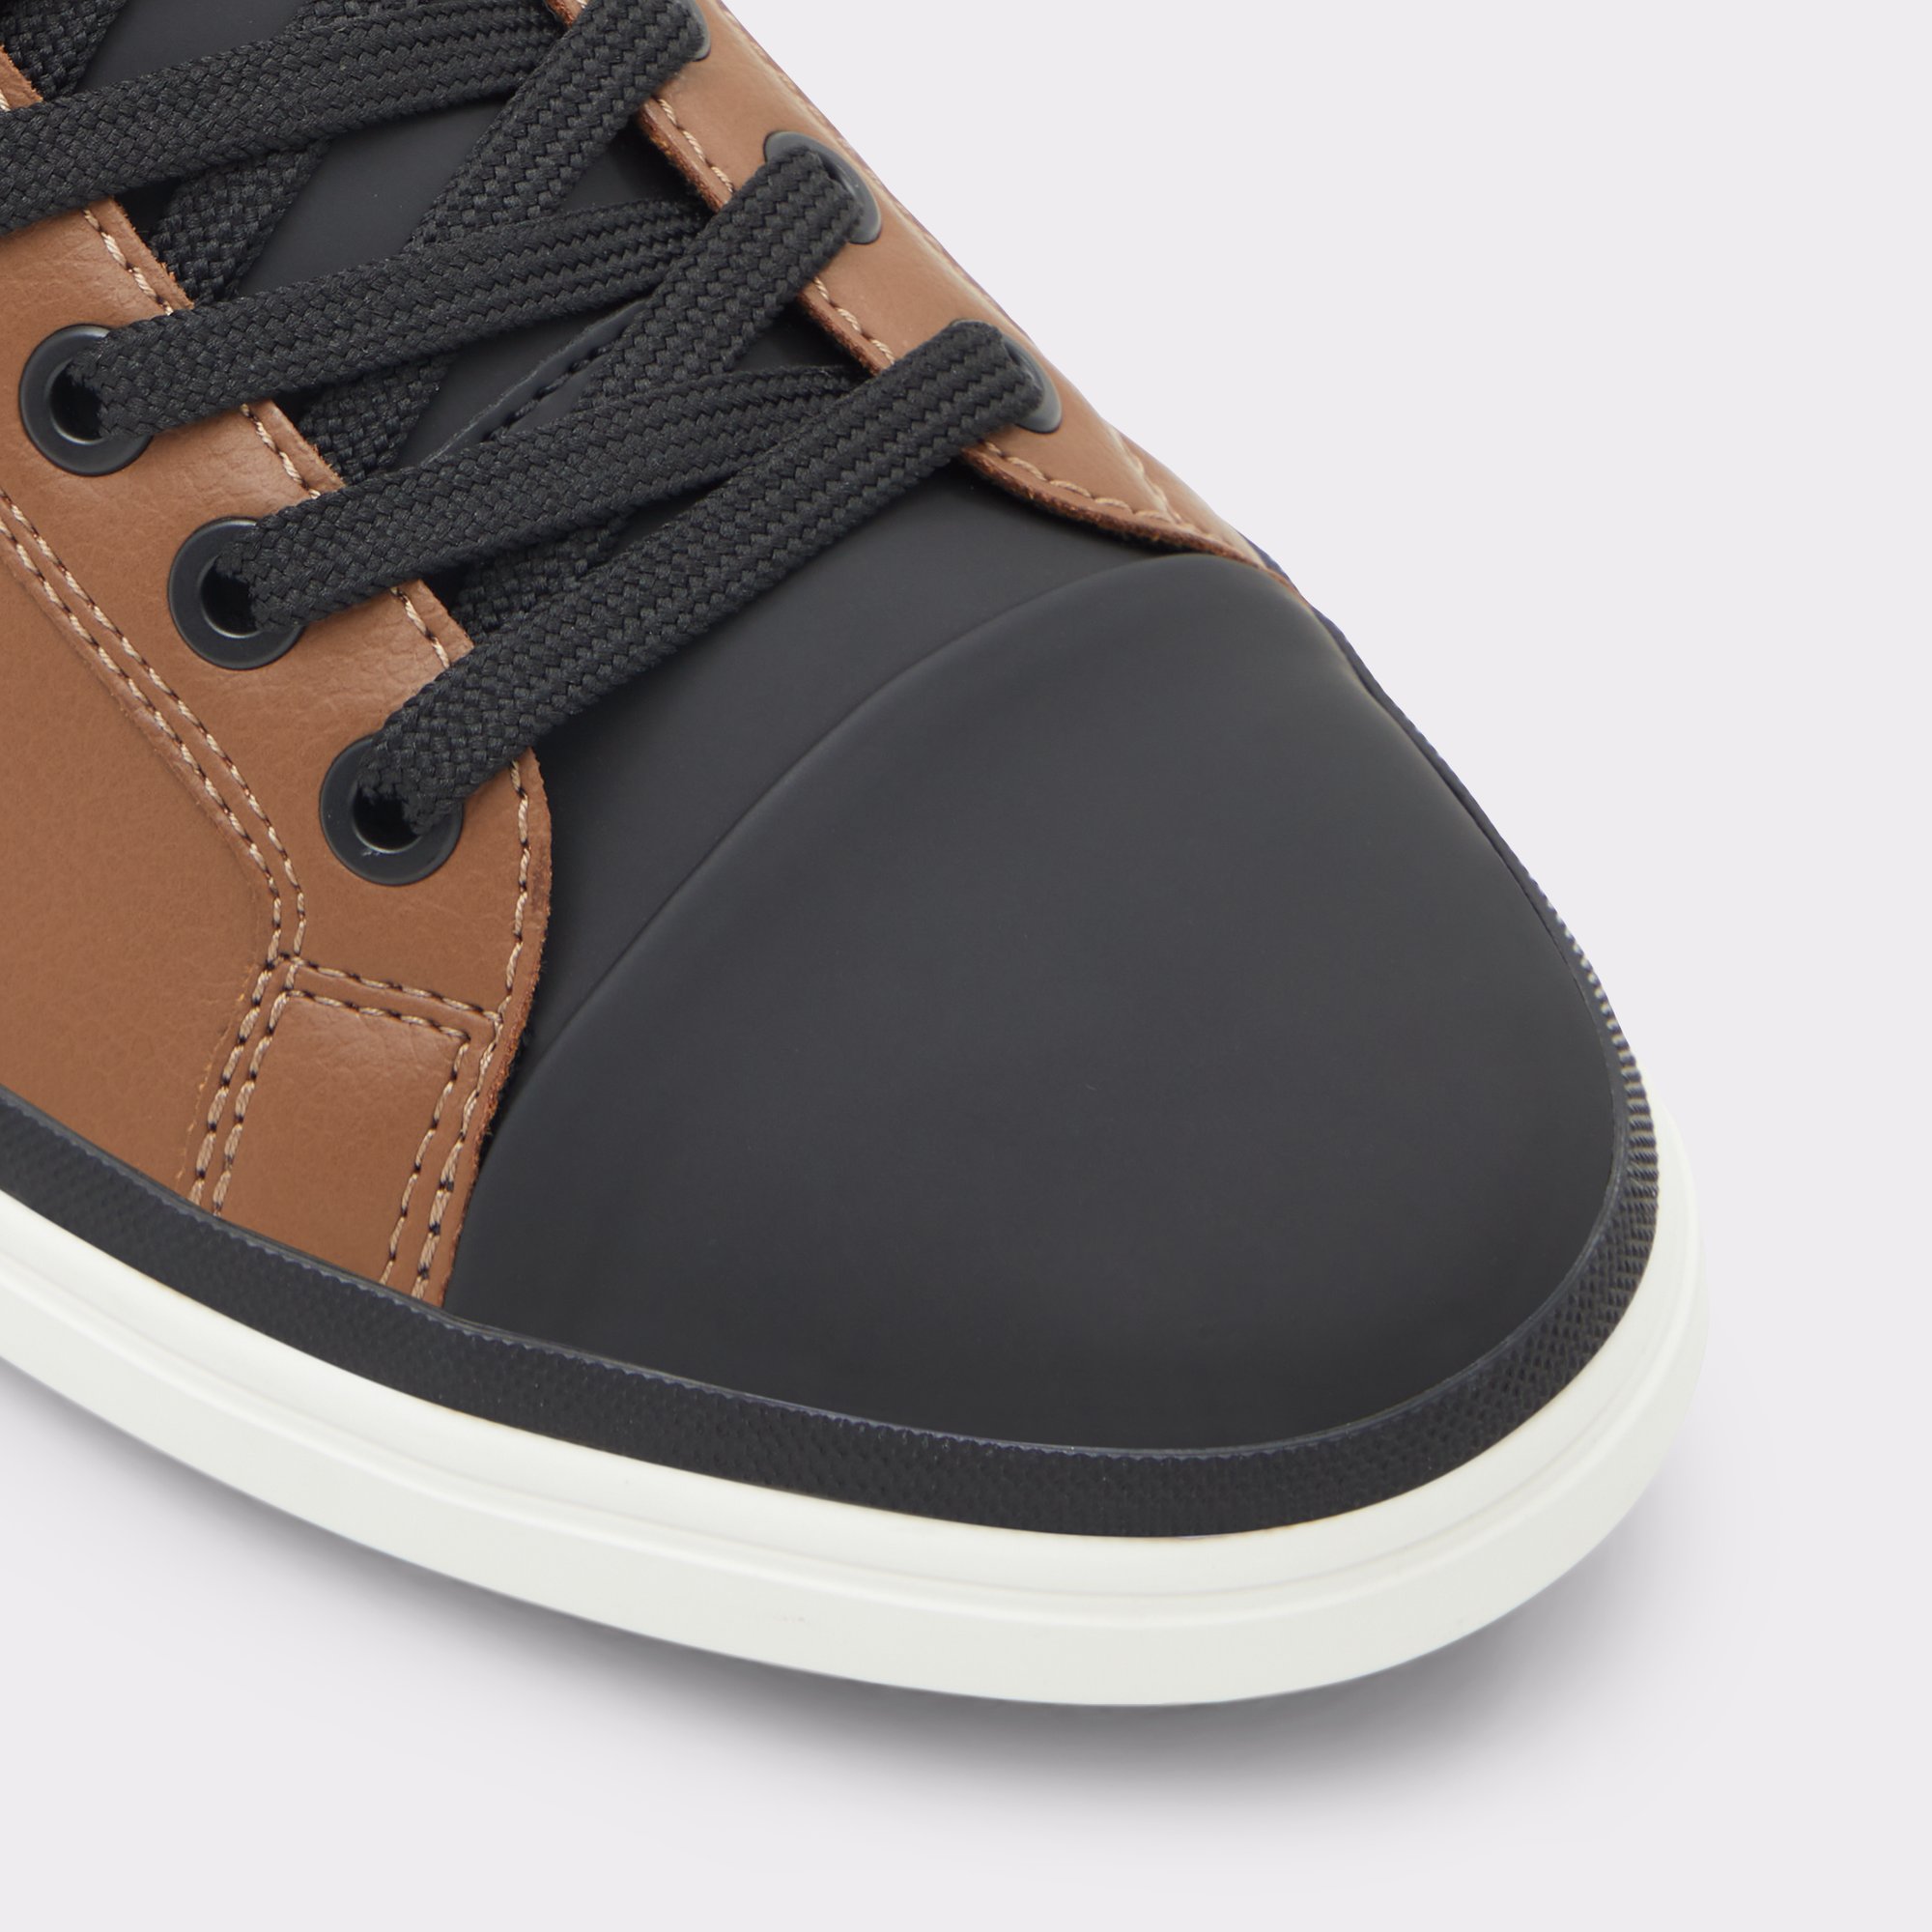 Salloker Medium Brown Men's Sneakers | ALDO Canada